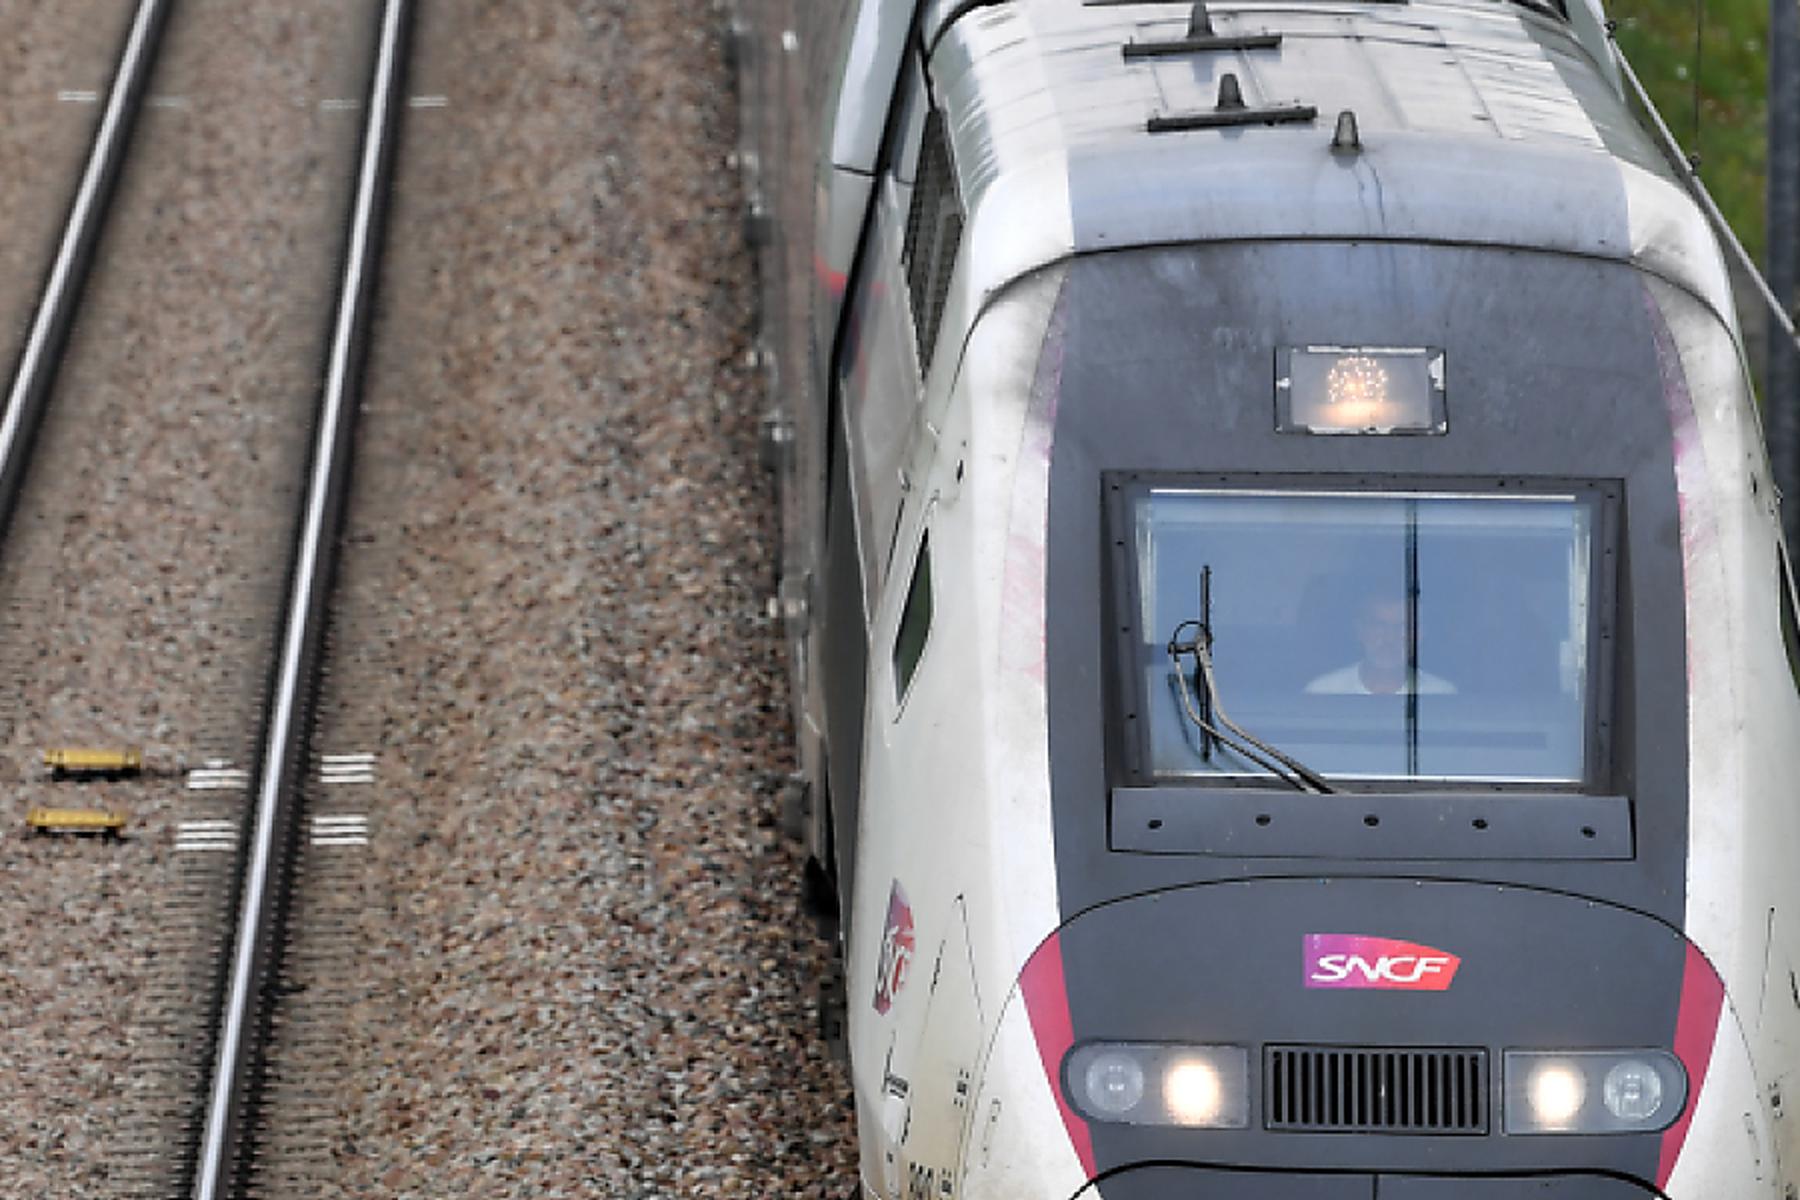 Paris: Linksextreme nach Bahnanschlägen in Frankreich verdächtigt